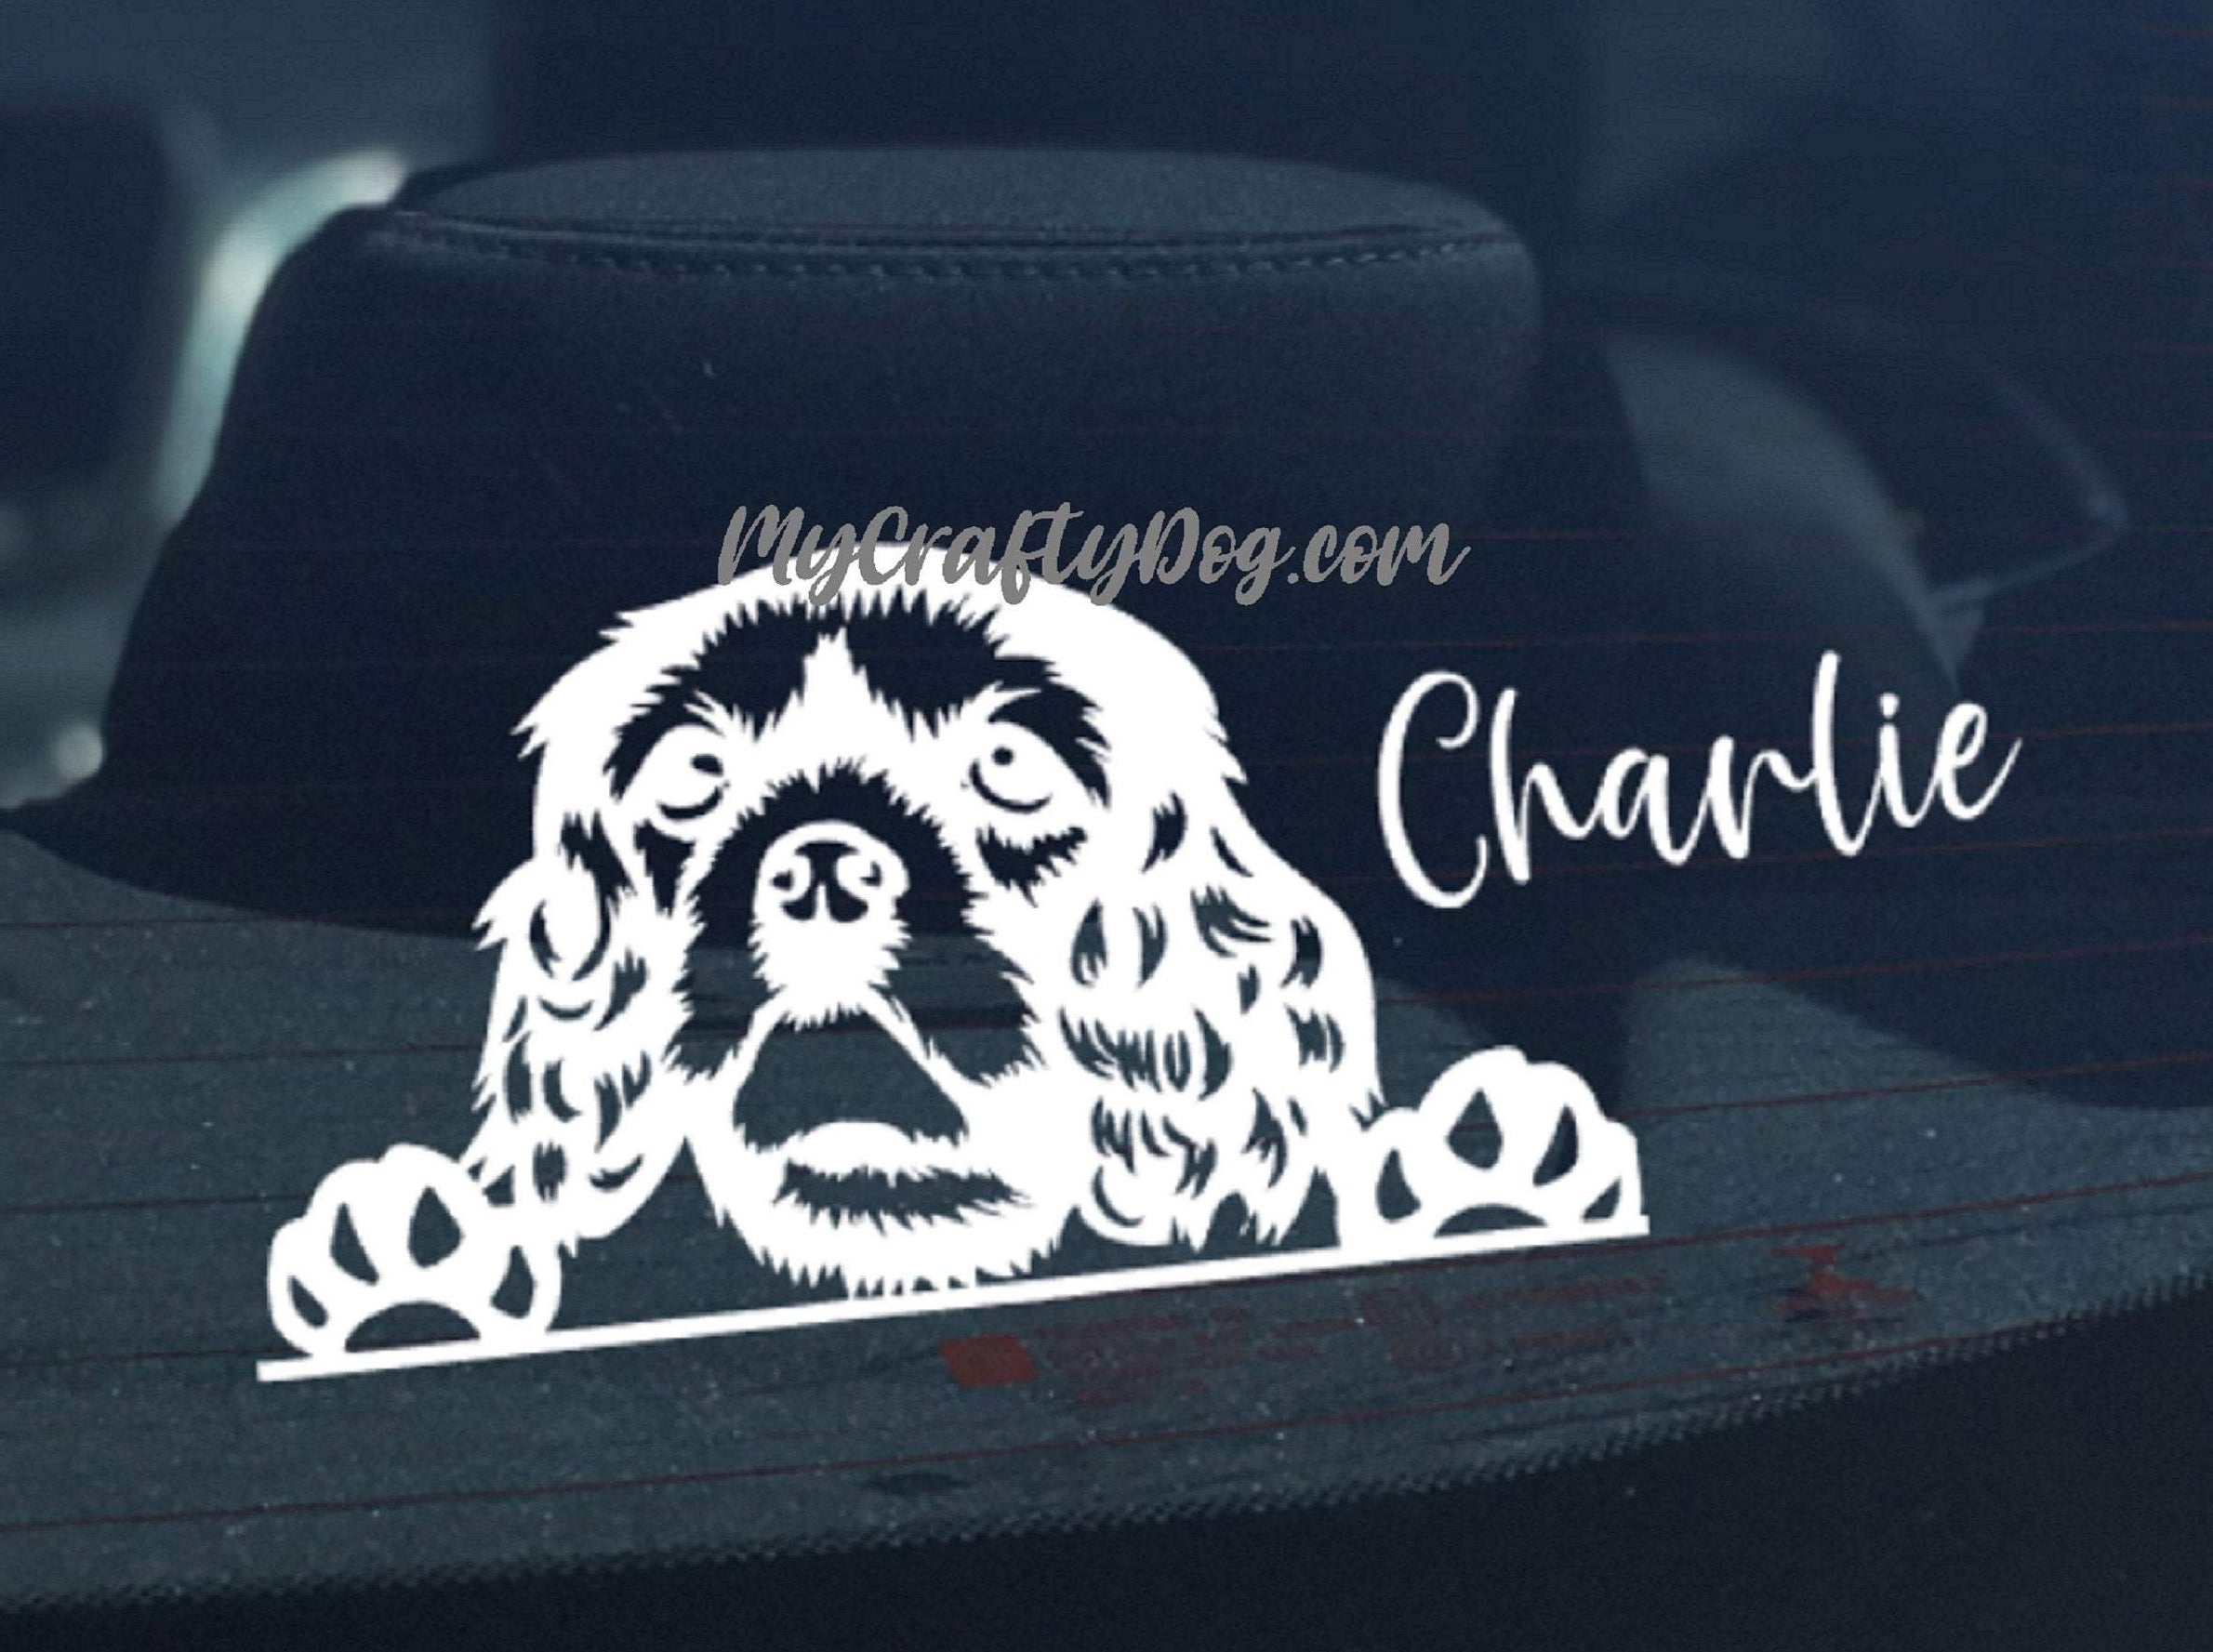 Peeking Cavalier King Charles Spaniel Car Sticker - My Crafty Dog